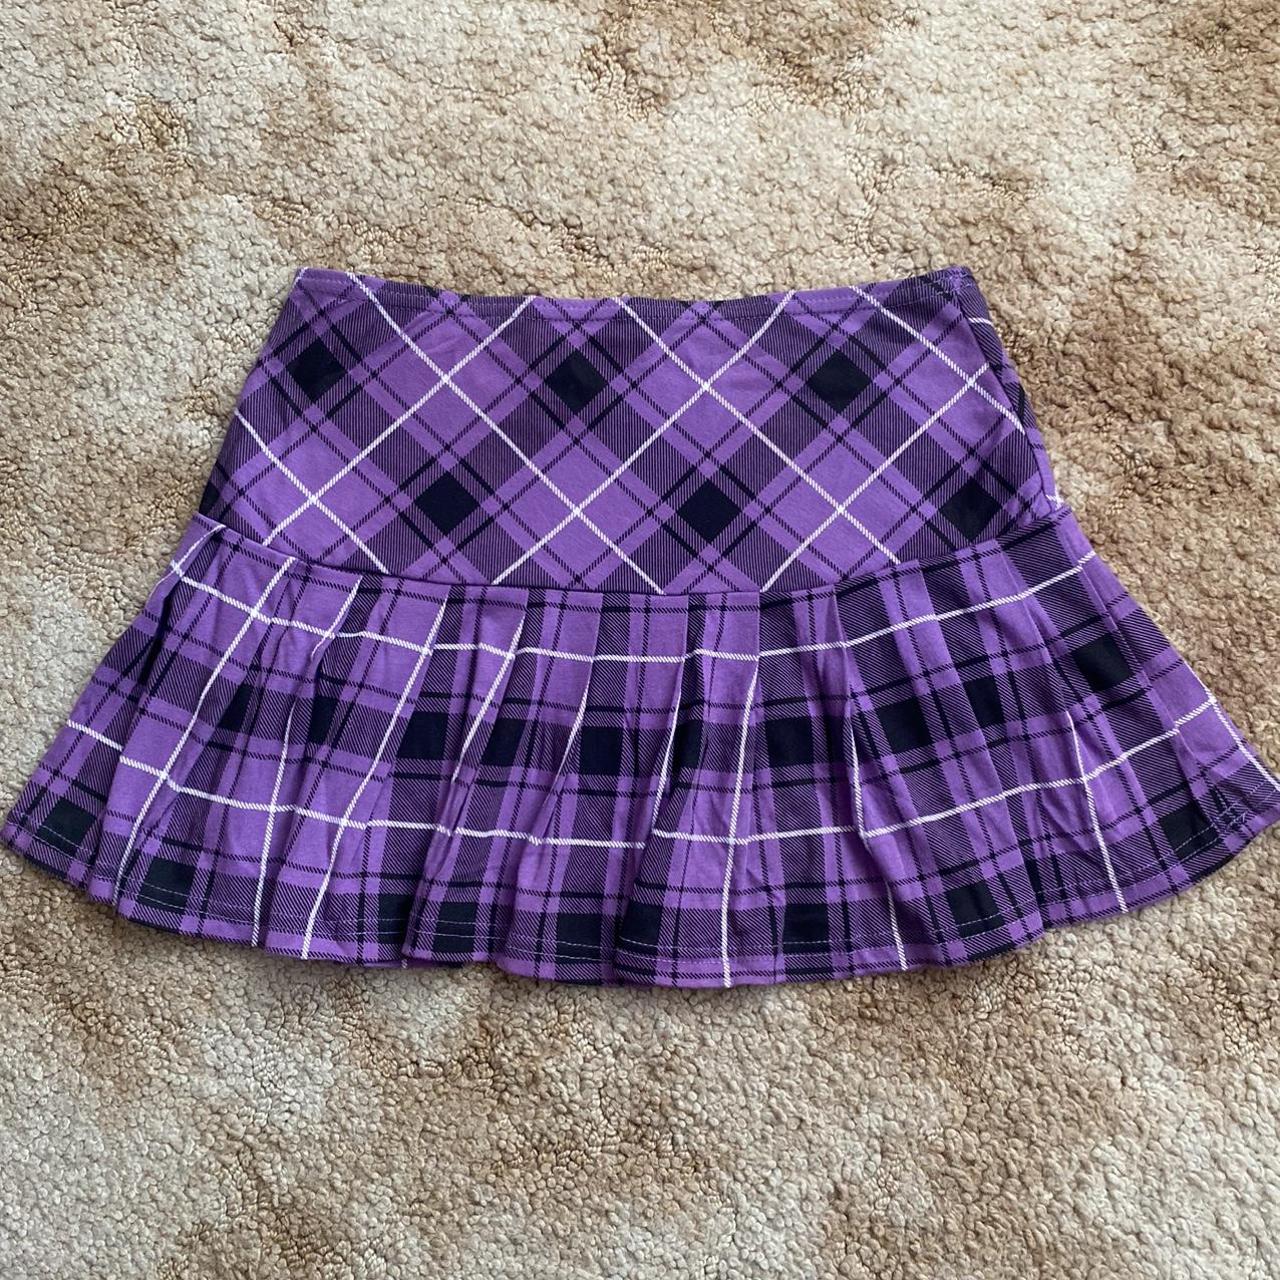 Purple plaid micro mini skirt Size (XS) - best fit... - Depop